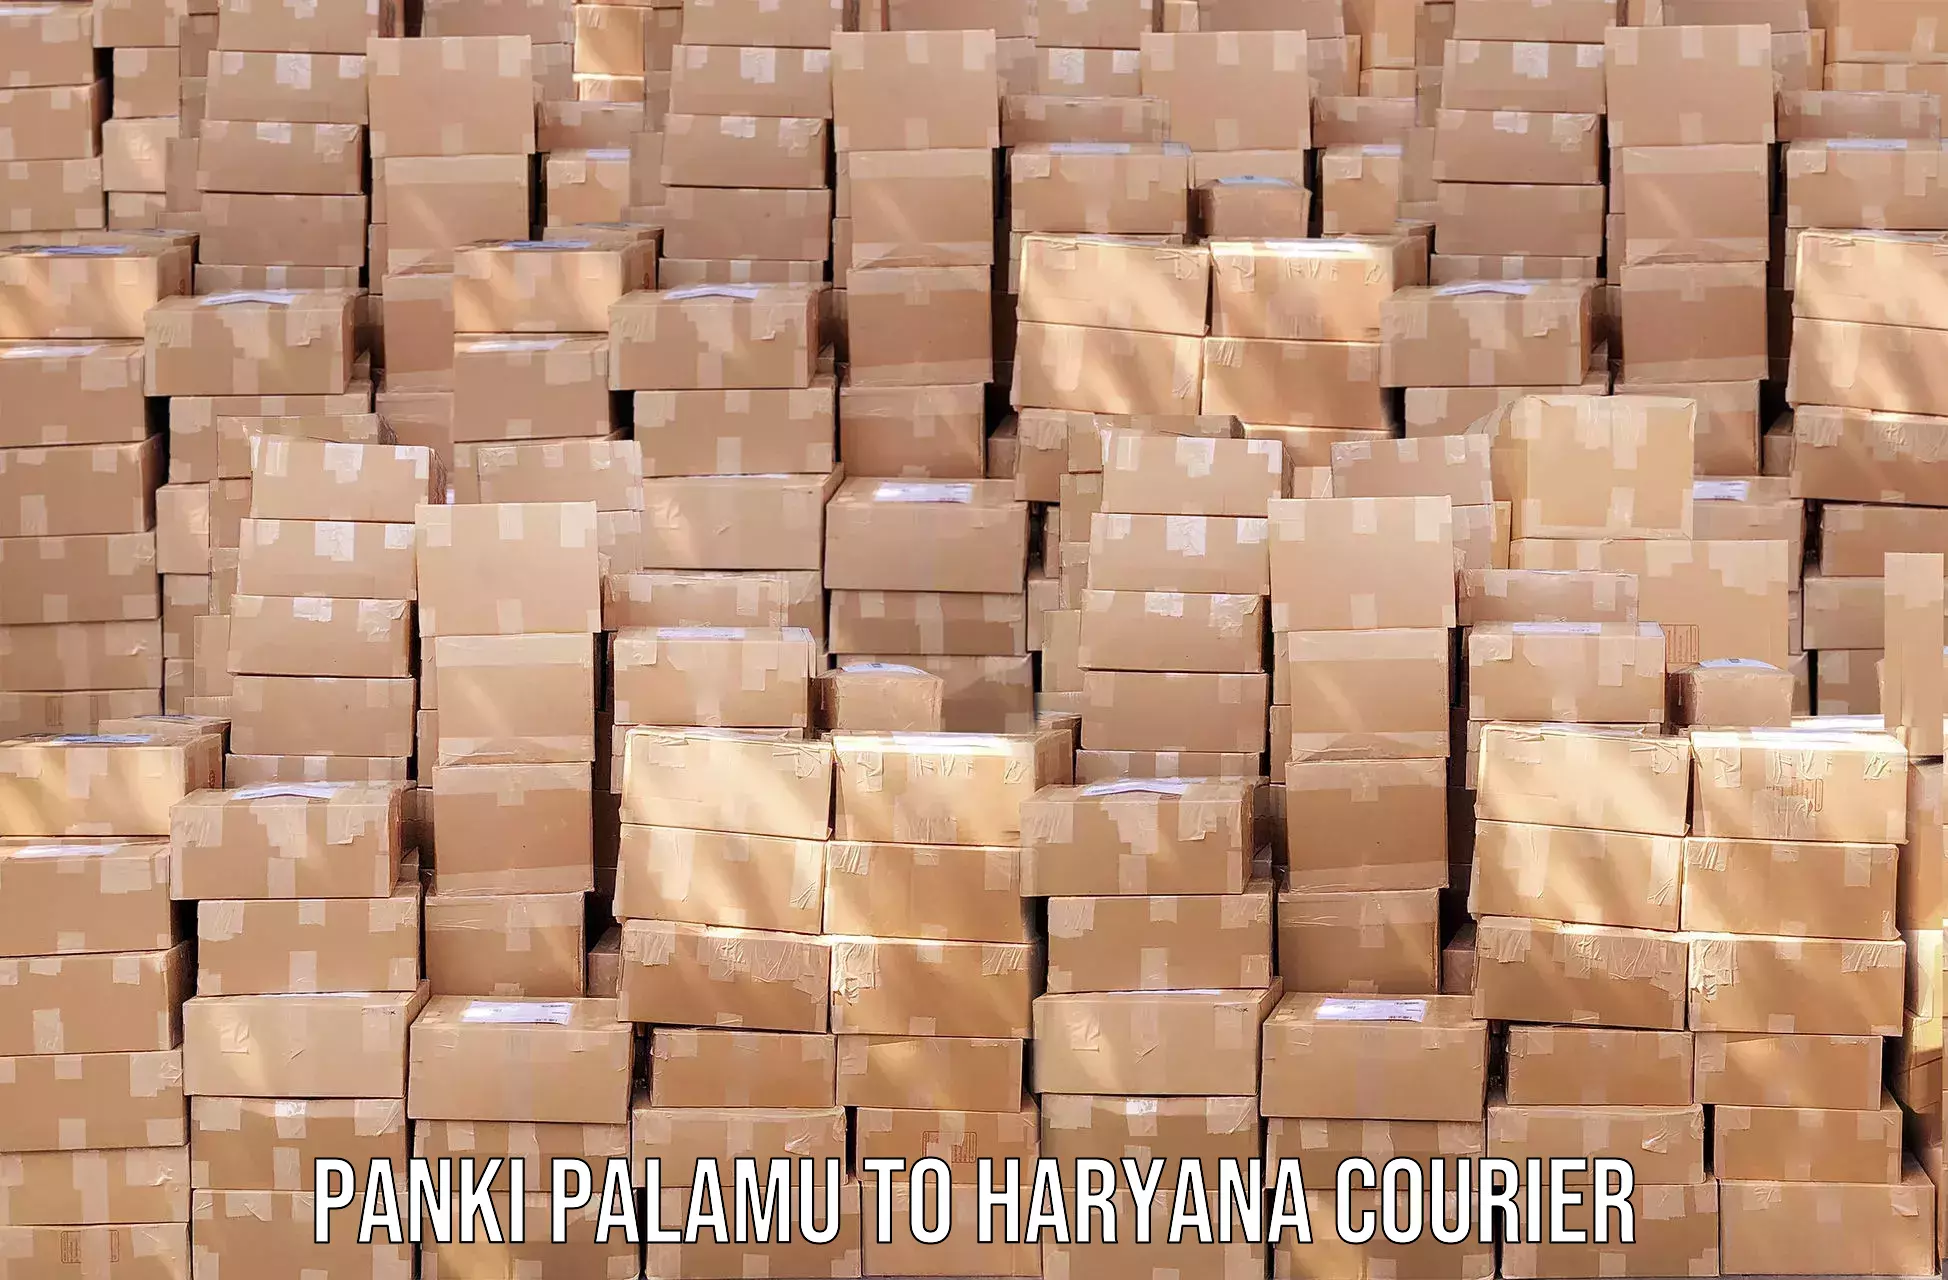 Reliable courier services Panki Palamu to Haryana